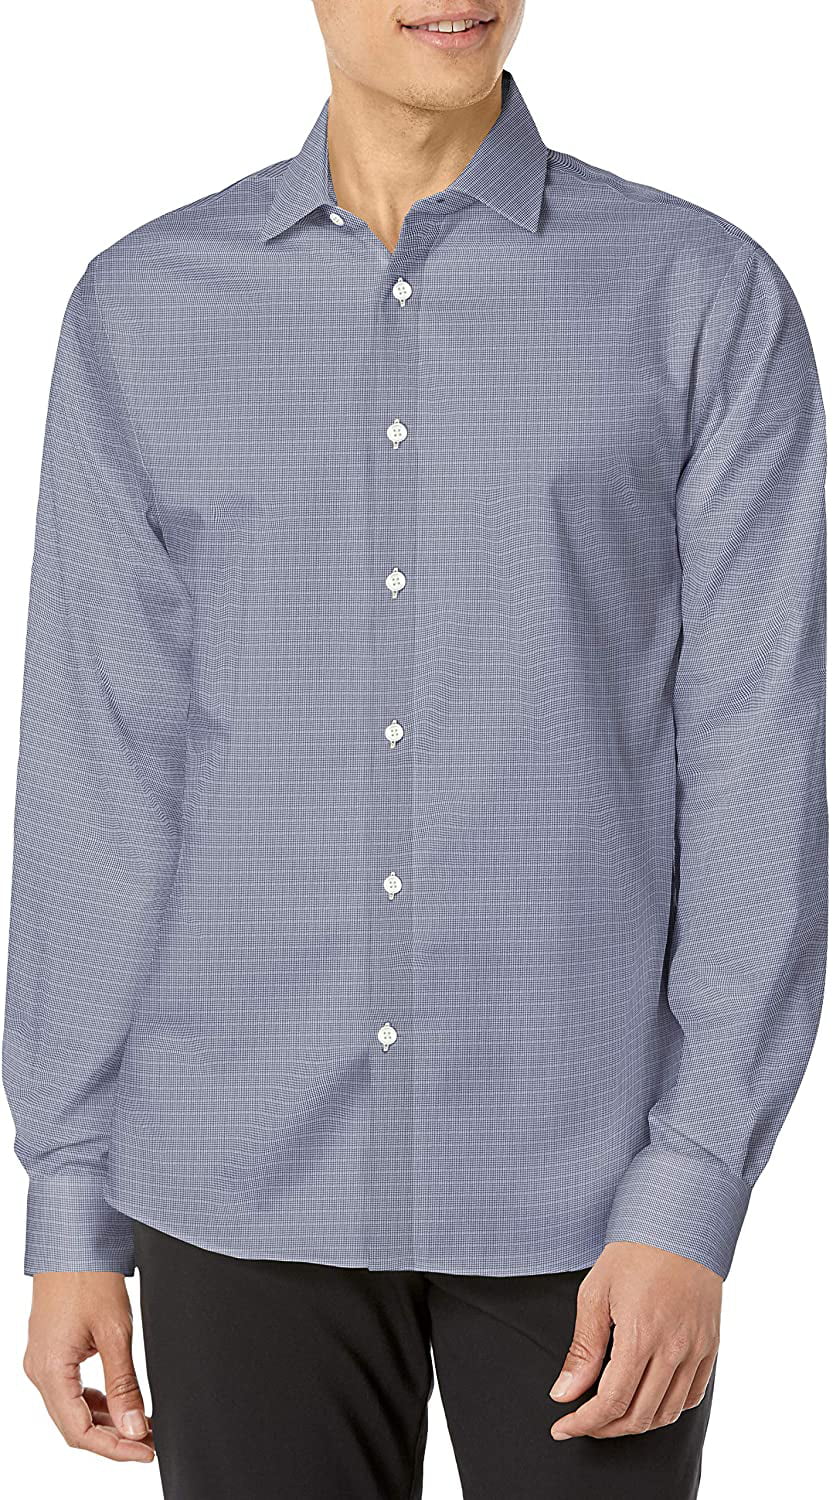 Blue Tommy Hilfiger Slim Fit Heritage Oxford Dress Shirt 14.5 Neck 32/33 Sleeve